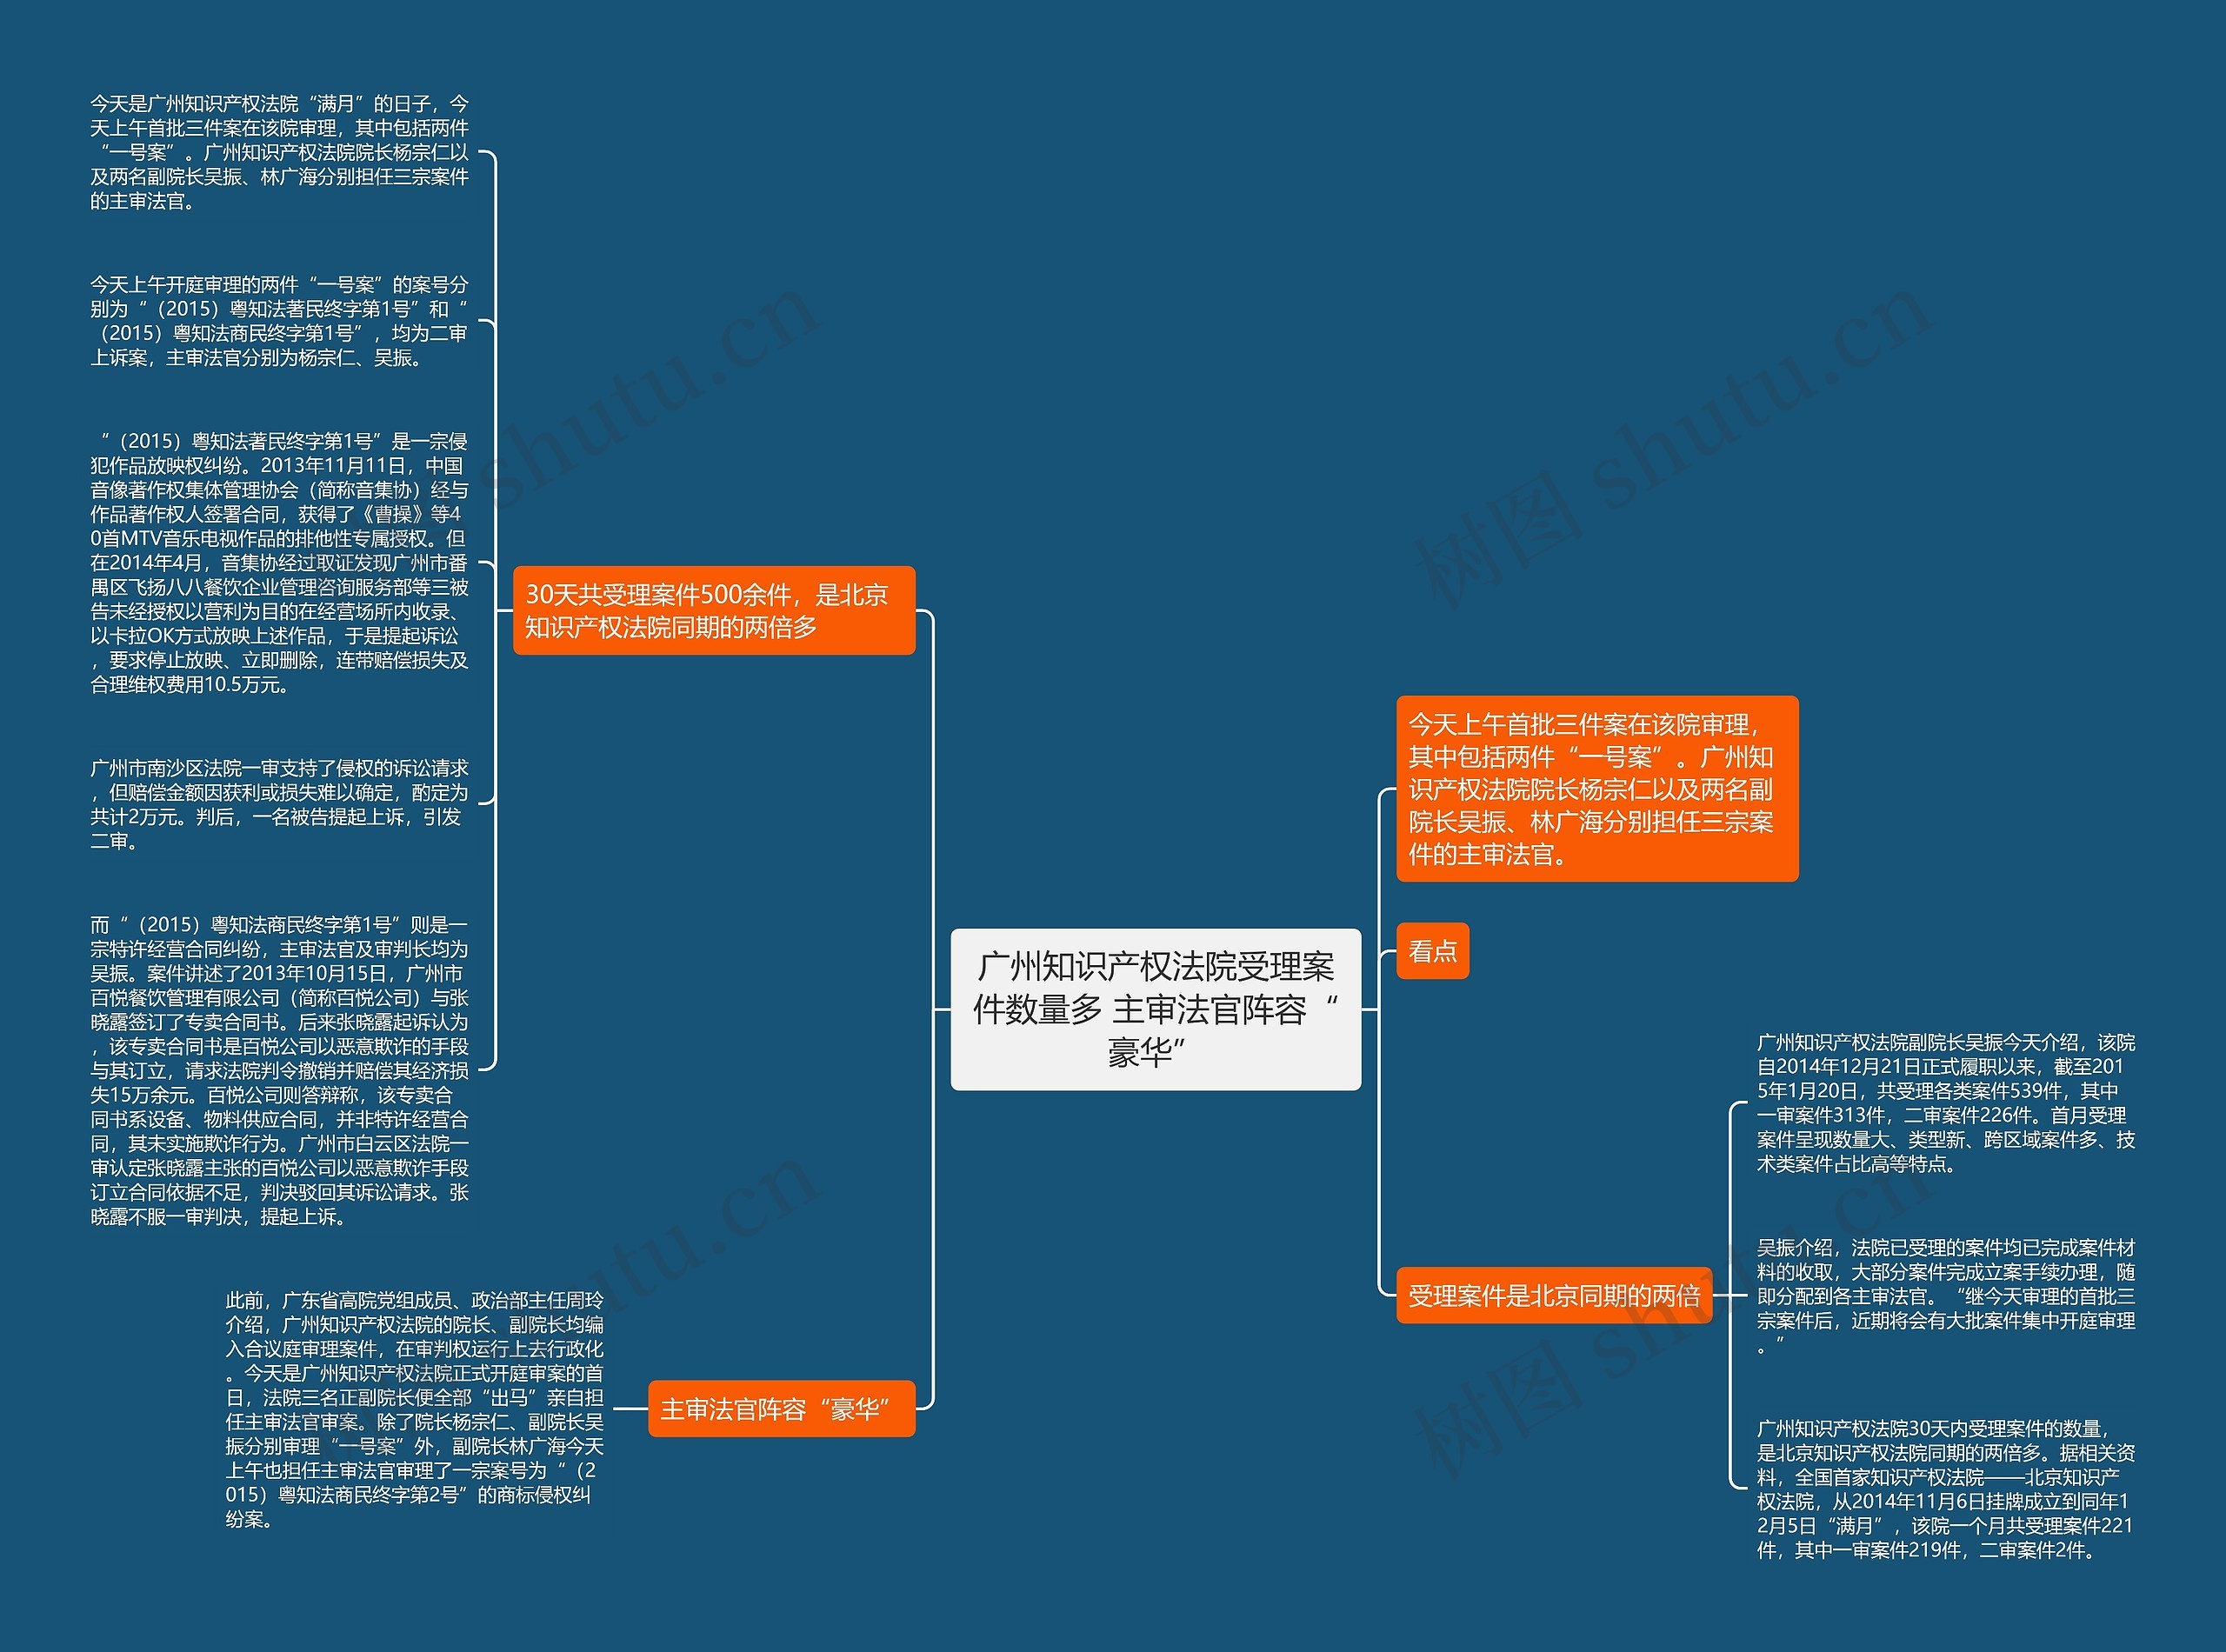 广州知识产权法院受理案件数量多 主审法官阵容“豪华”思维导图